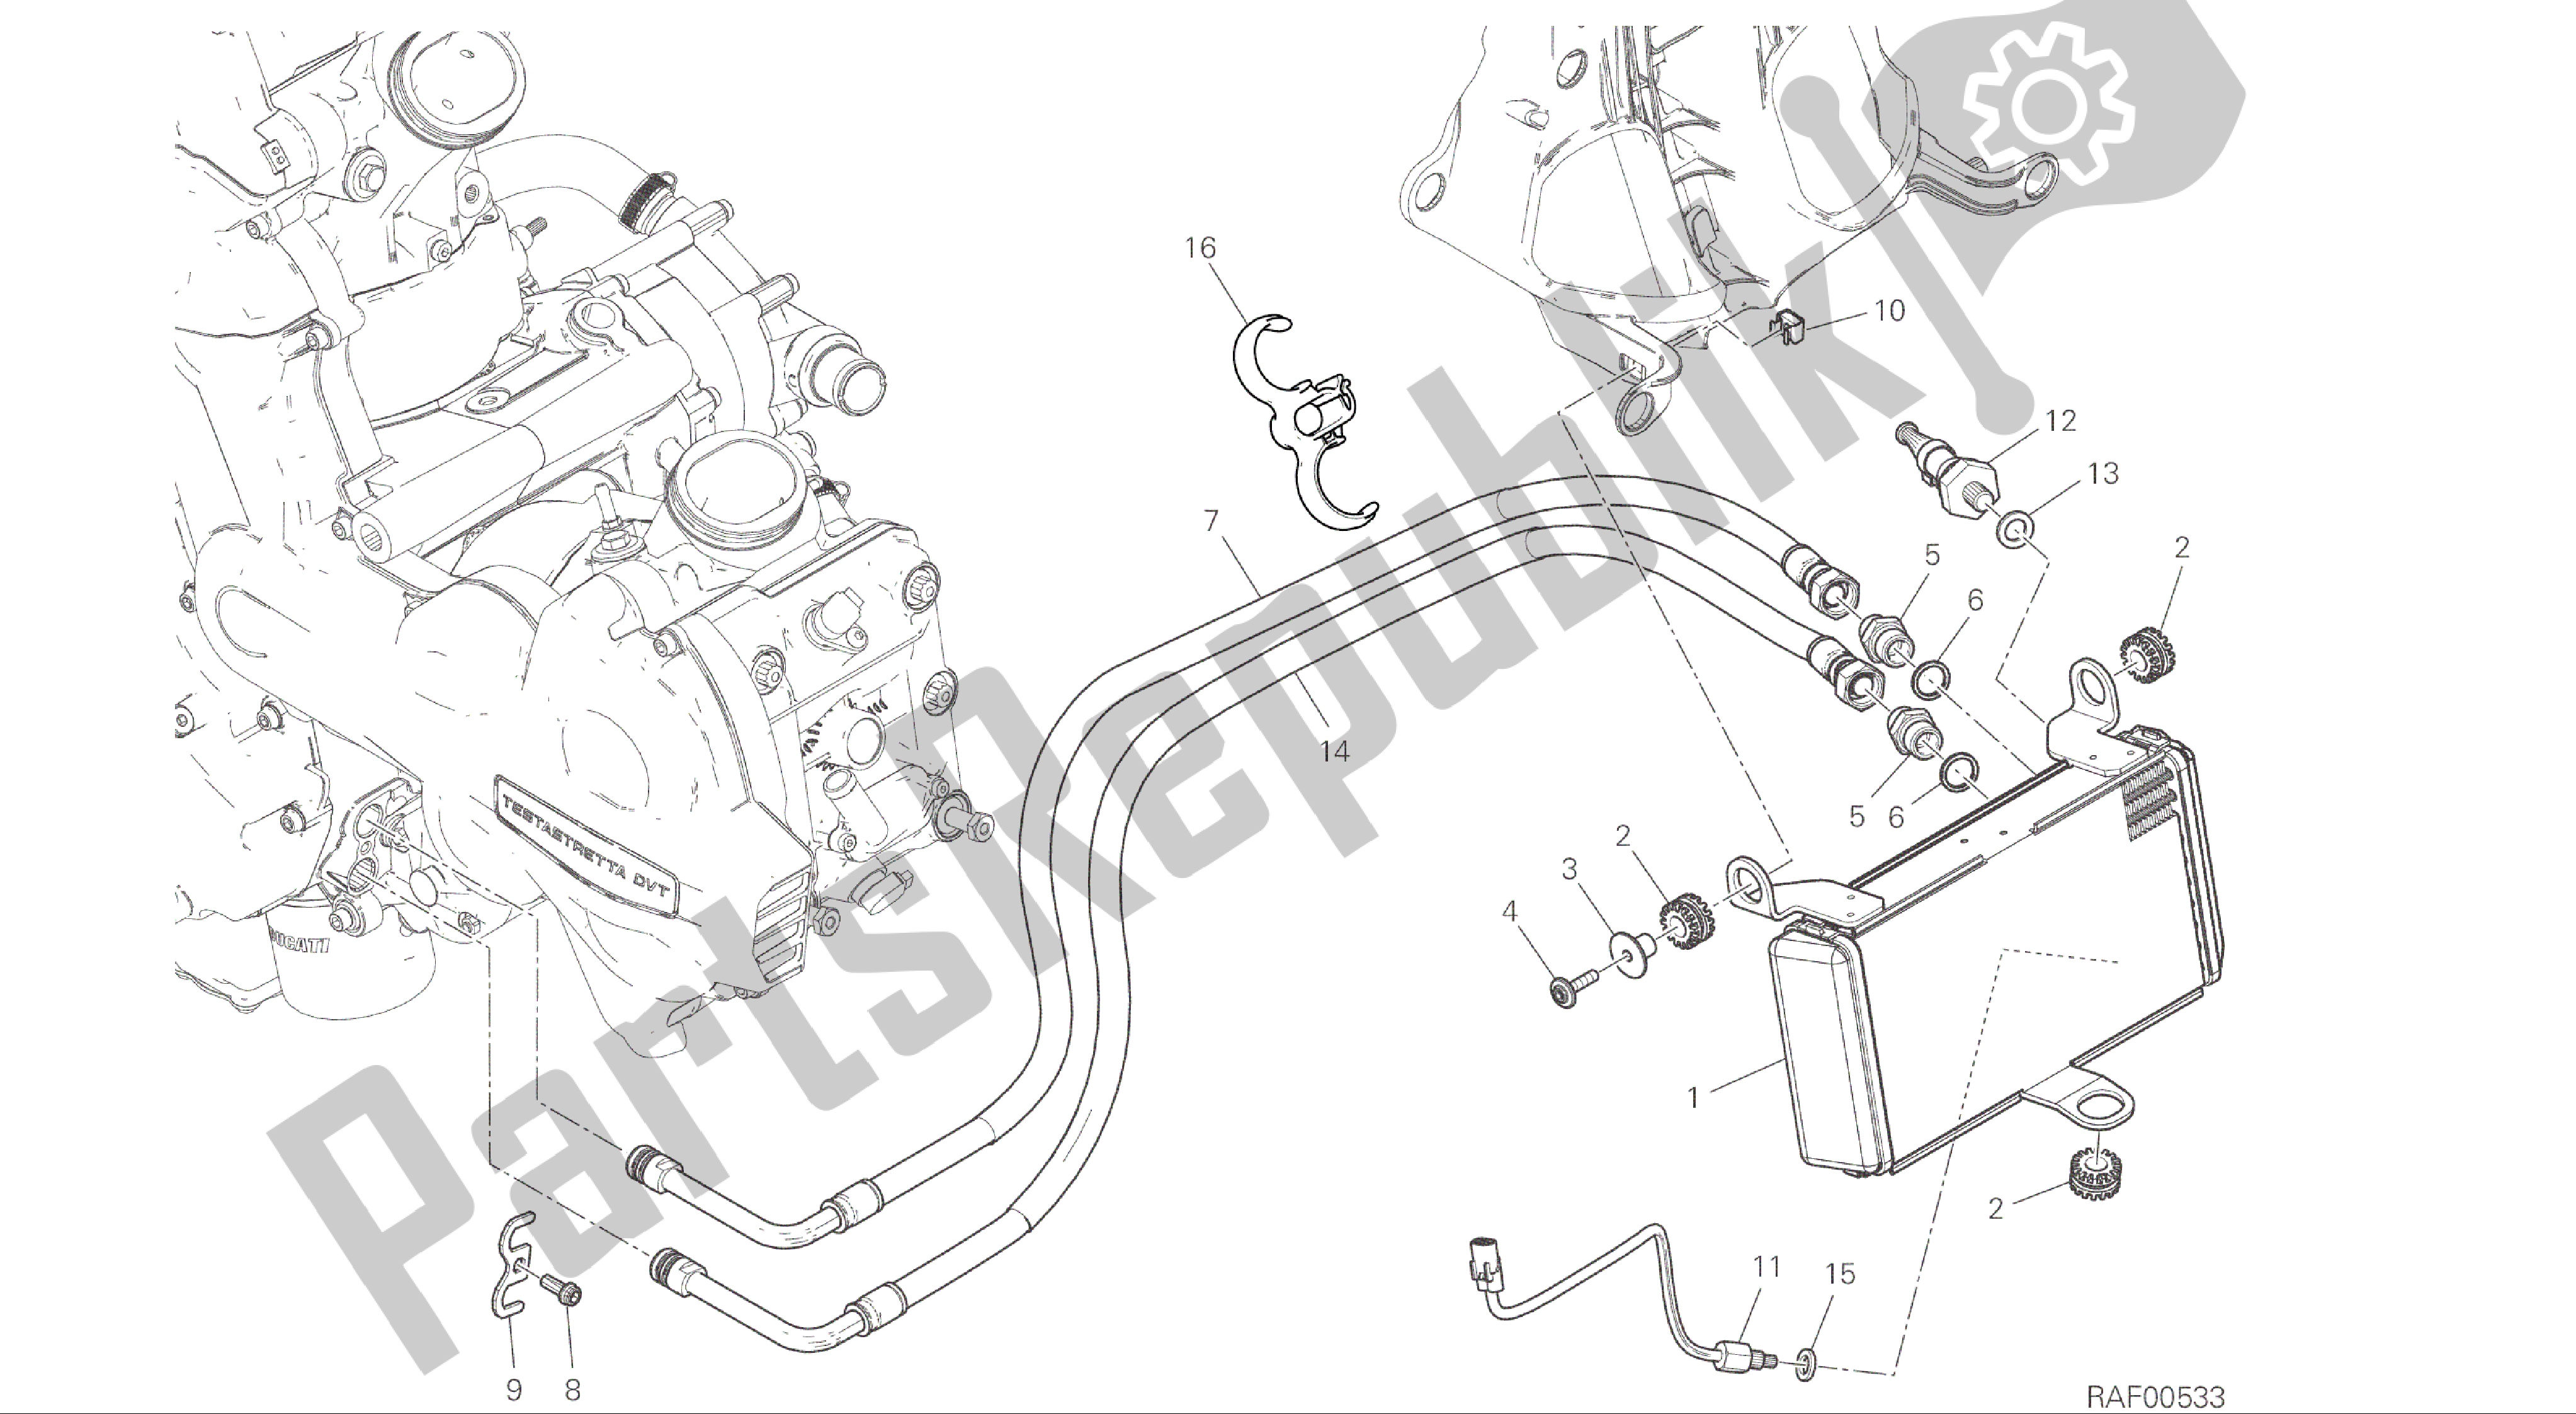 Alle onderdelen voor de Tekening 016 - Oliekoeler [mod: Ms1200; Xst: Aus, Eur, Fra, Jap] Groepsmotor van de Ducati Multistrada 1200 2015